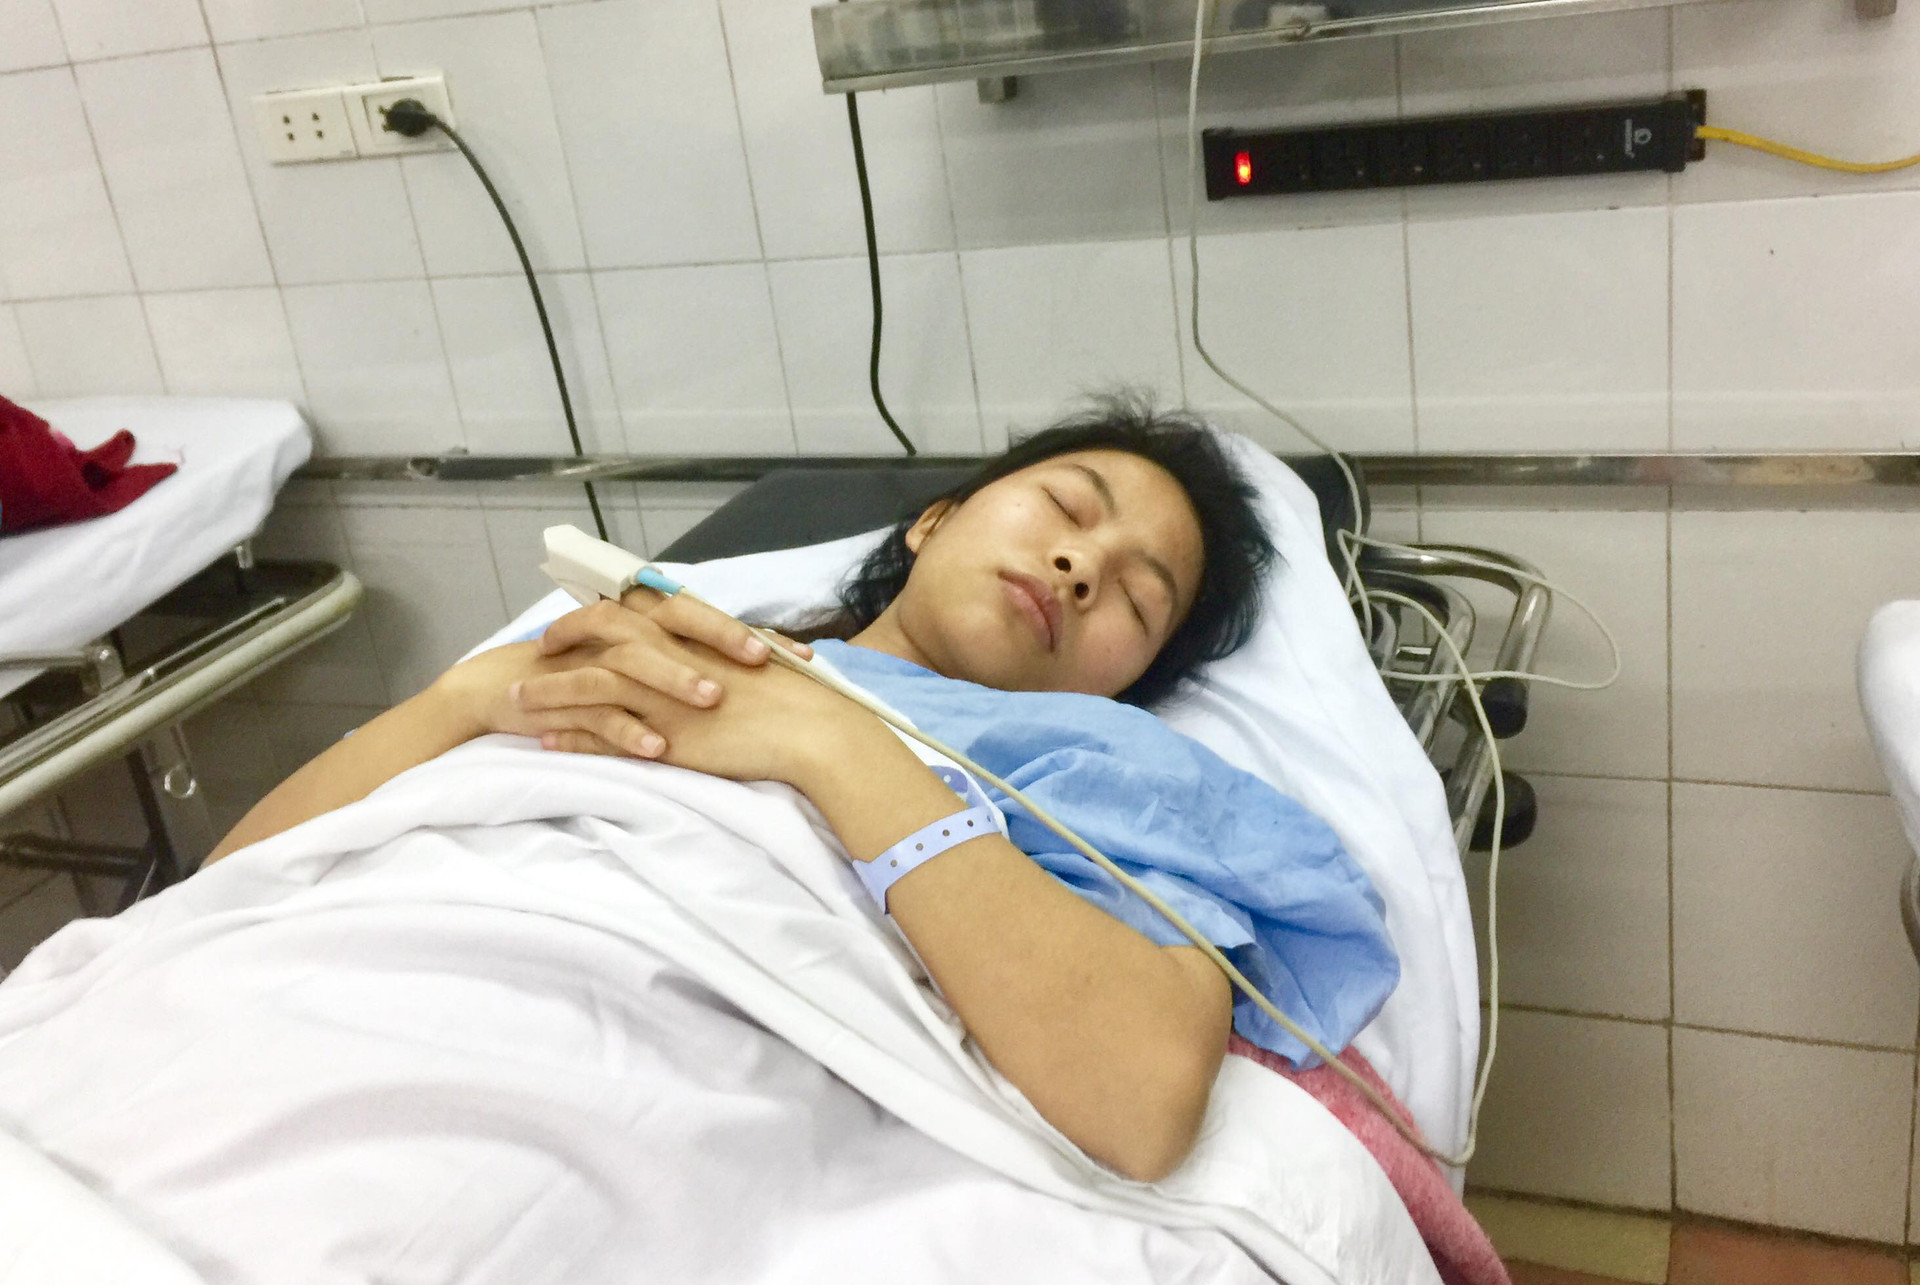 Bà mẹ 23 tuổi bị vỡ nát xương chậu trong vụ nổ ở Bắc Ninh